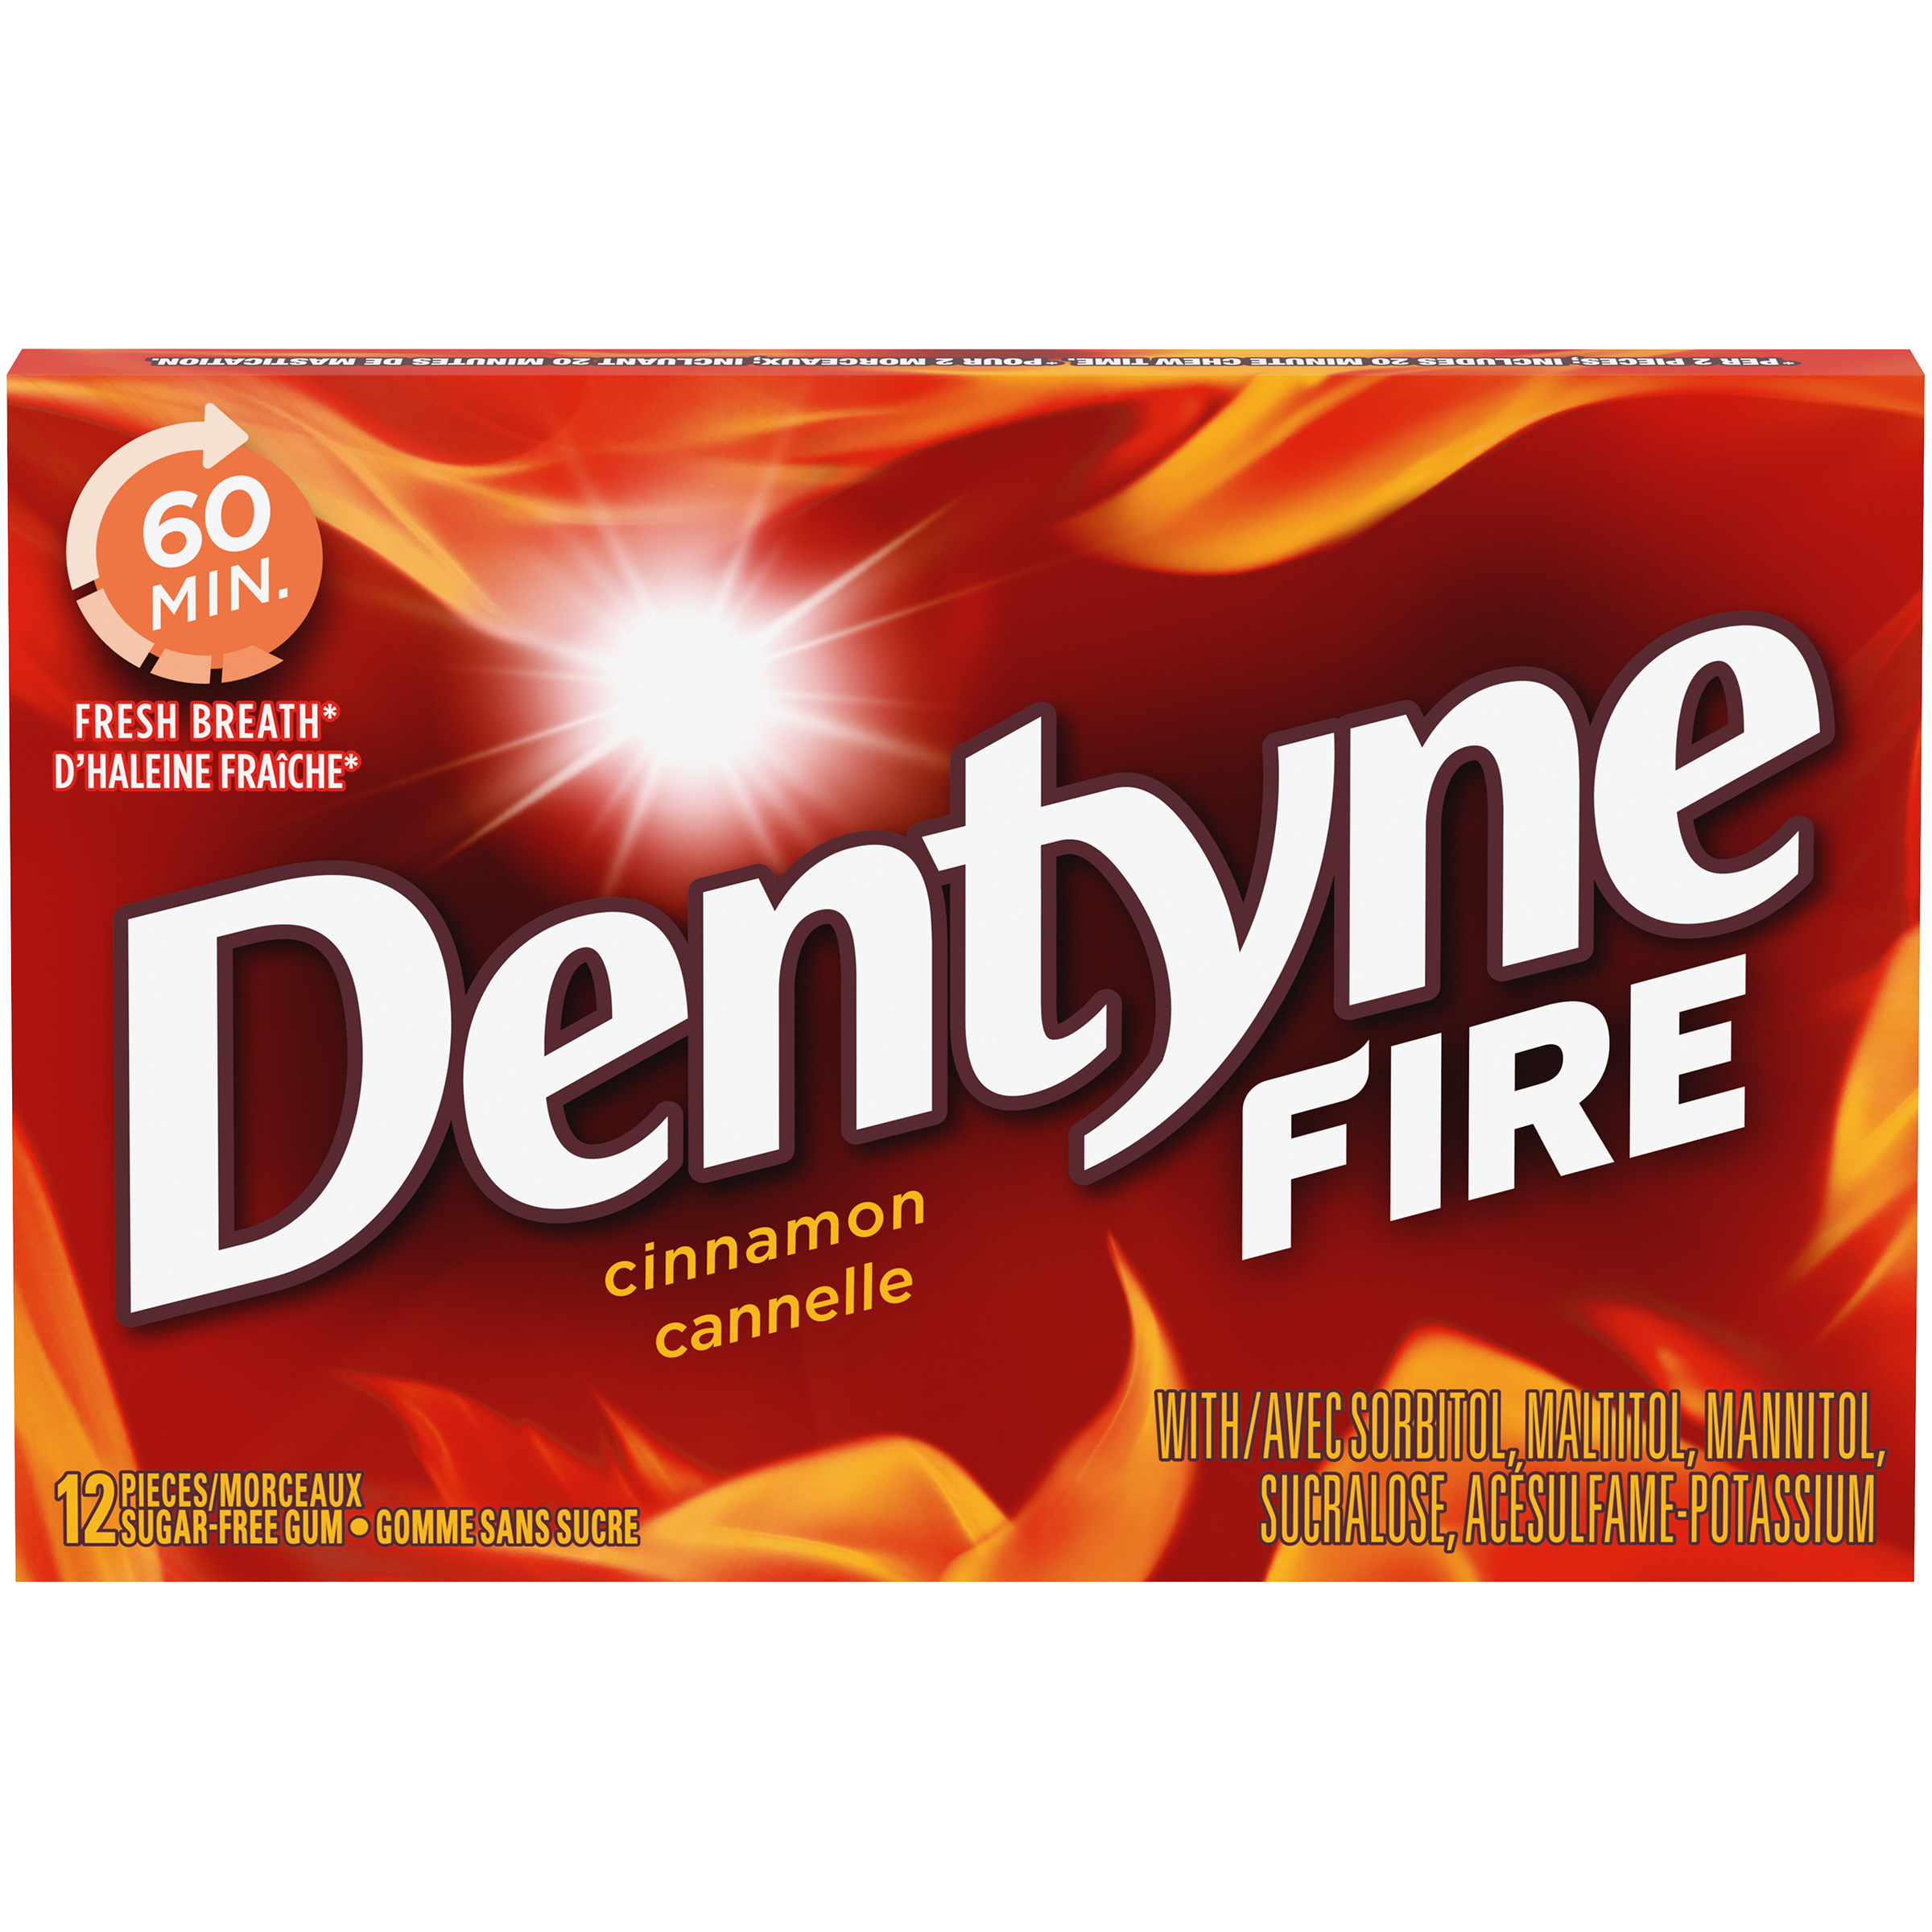 DENTYNE FIRE CANNELLE 12MCX